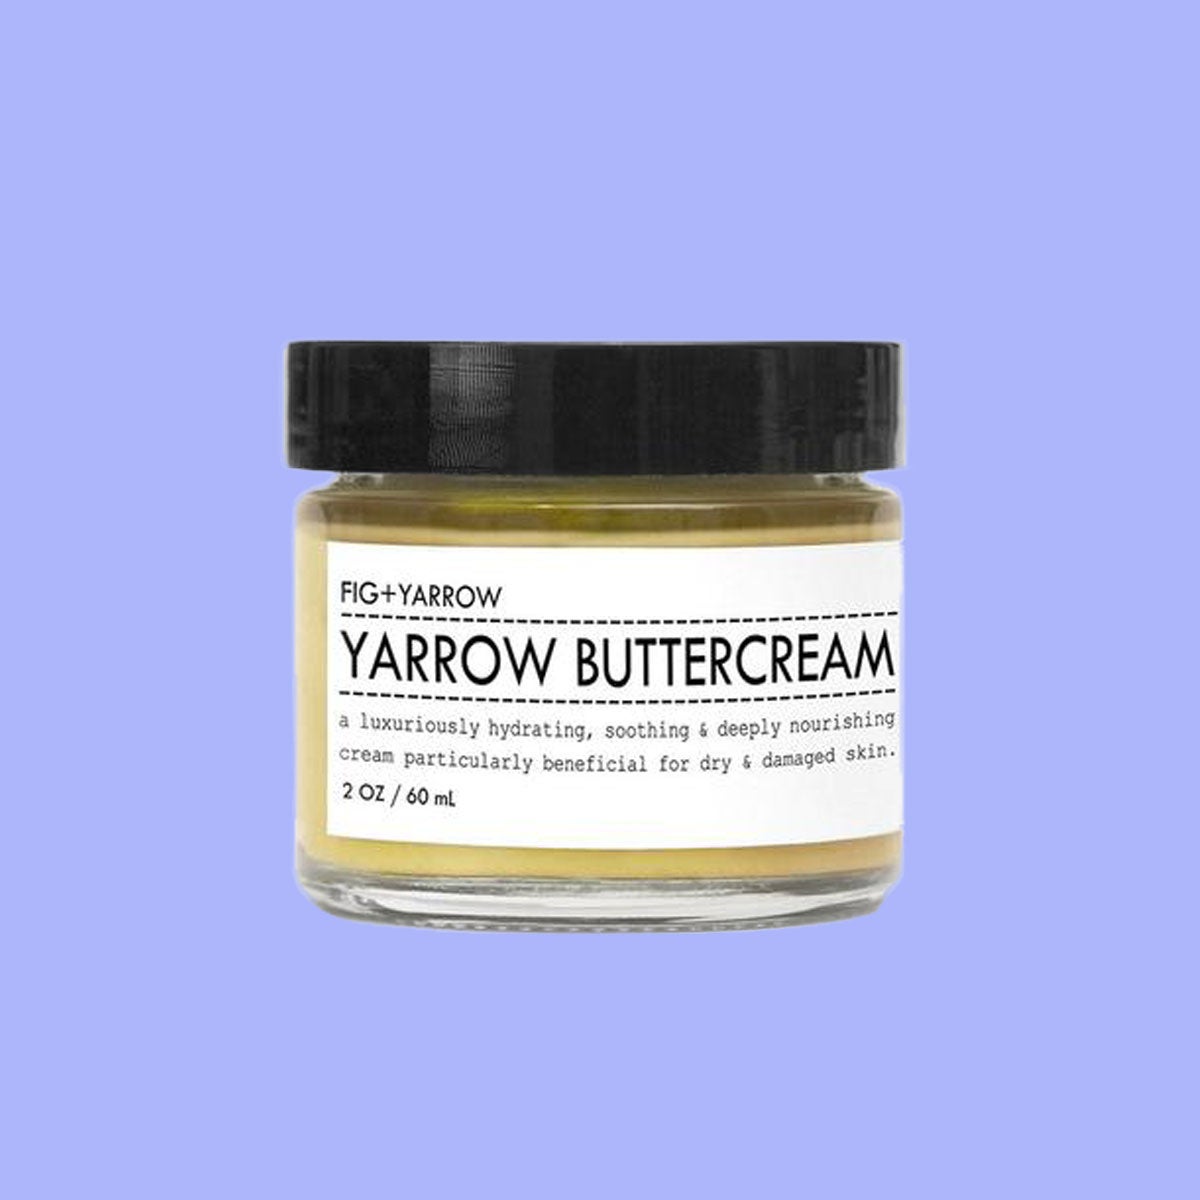 Get Glowing! 17 Melanin-Friendly Body Butters To Help Ashy Skin